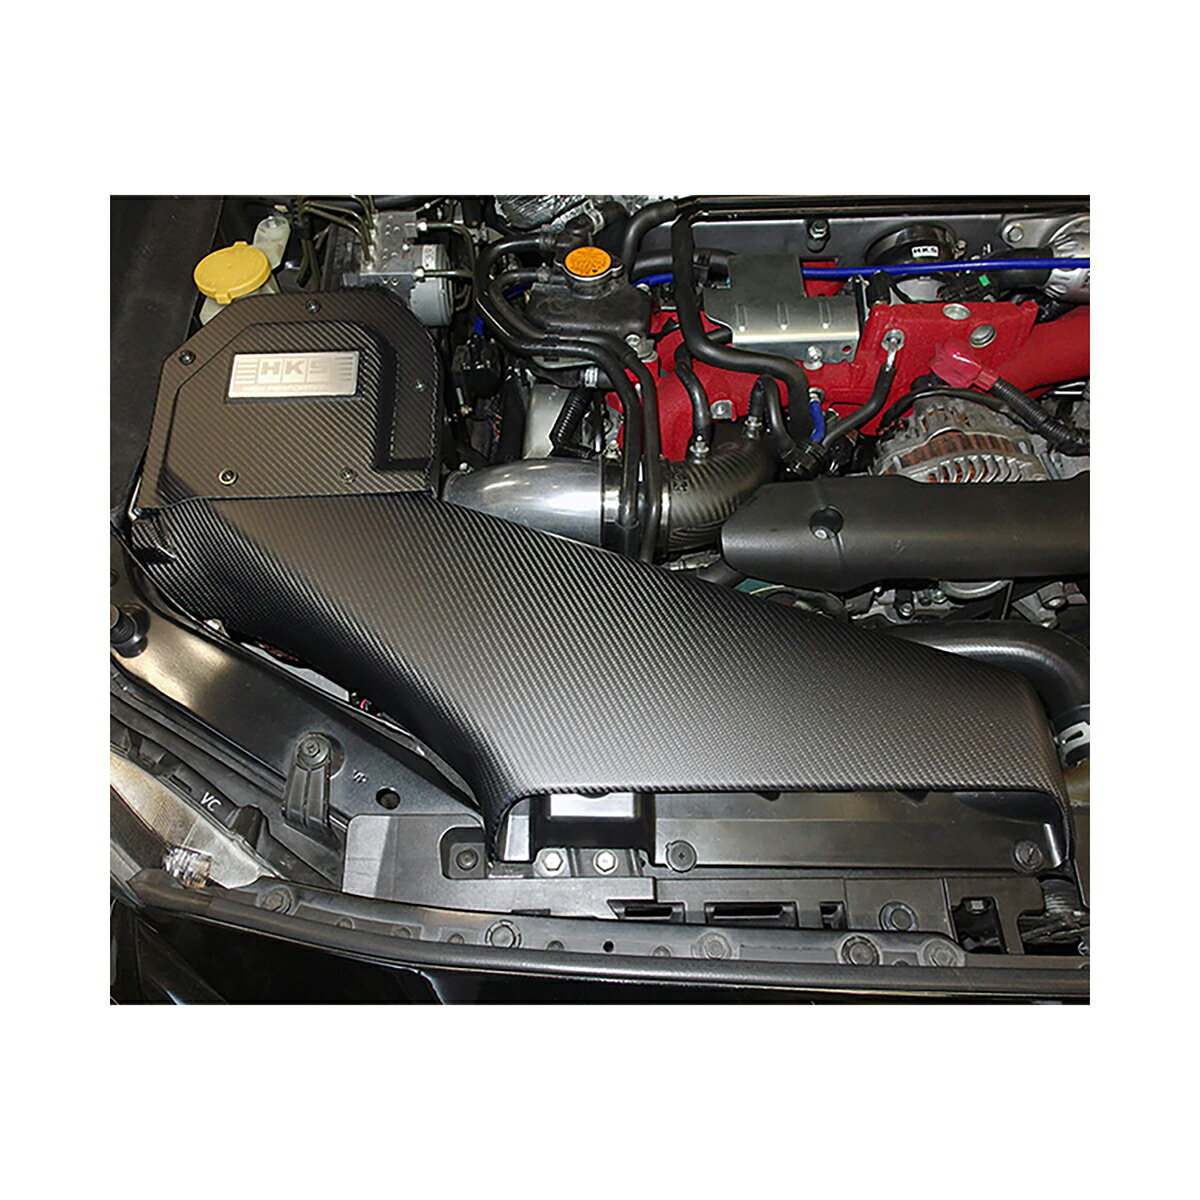 ■レーシングサクションのバージョンアップアイテムとして専用設計。エンジンルームとエアクリーナー本体を完全に隔てることで常にフレッシュエアを導入でき、安定したパフォーマンスが得られます。■クリーナーボックスカバー及びダクトカバーにはカーボンクロスを使用し、オートクレーブ製法に迫る軽さと強度を持つインフュージョン製法にて製作。表面は3k綾織のカーボンクロスでエンジンルームを彩ります。■クリーナーボックス部はグラスファイバーを素材としたハンドレイアップ製法を採用。■艶消しカーボンとブラックカラーがエンジンルームをレーシーに引き締めます。■剥き出しタイプエアクリーナーならではのスポーティな吸気サウンドもスポイルしません。■品番：70026-AF004■キット構成：コールドエアインテークフルキット（RS + インテークボックス）■適合車種：スバル　WRX　STI・型式：VAB・エンジン：EJ20（TURBO）・年式：14/08〜19/12※必ず適合をご確認の上、ご購入下さい。※ご使用の前に必ず取扱説明書をよく読み正しくお使いください。※画像はイメージの為、実際の商品とは多少異なる場合がございます。